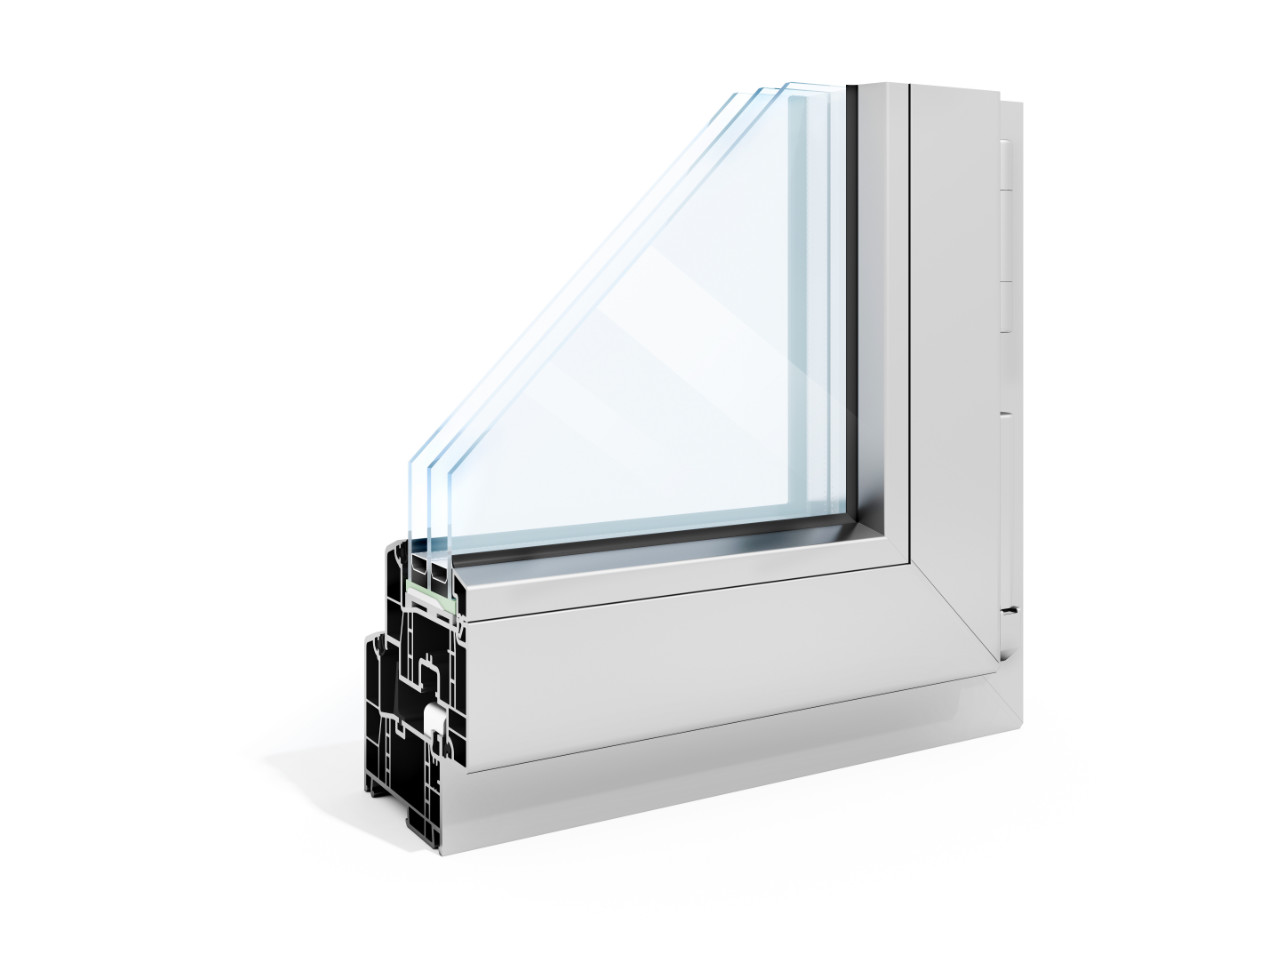 Fensterheizung - Innovative Technik – FamBau - Hier bauen wir gemeinsam.